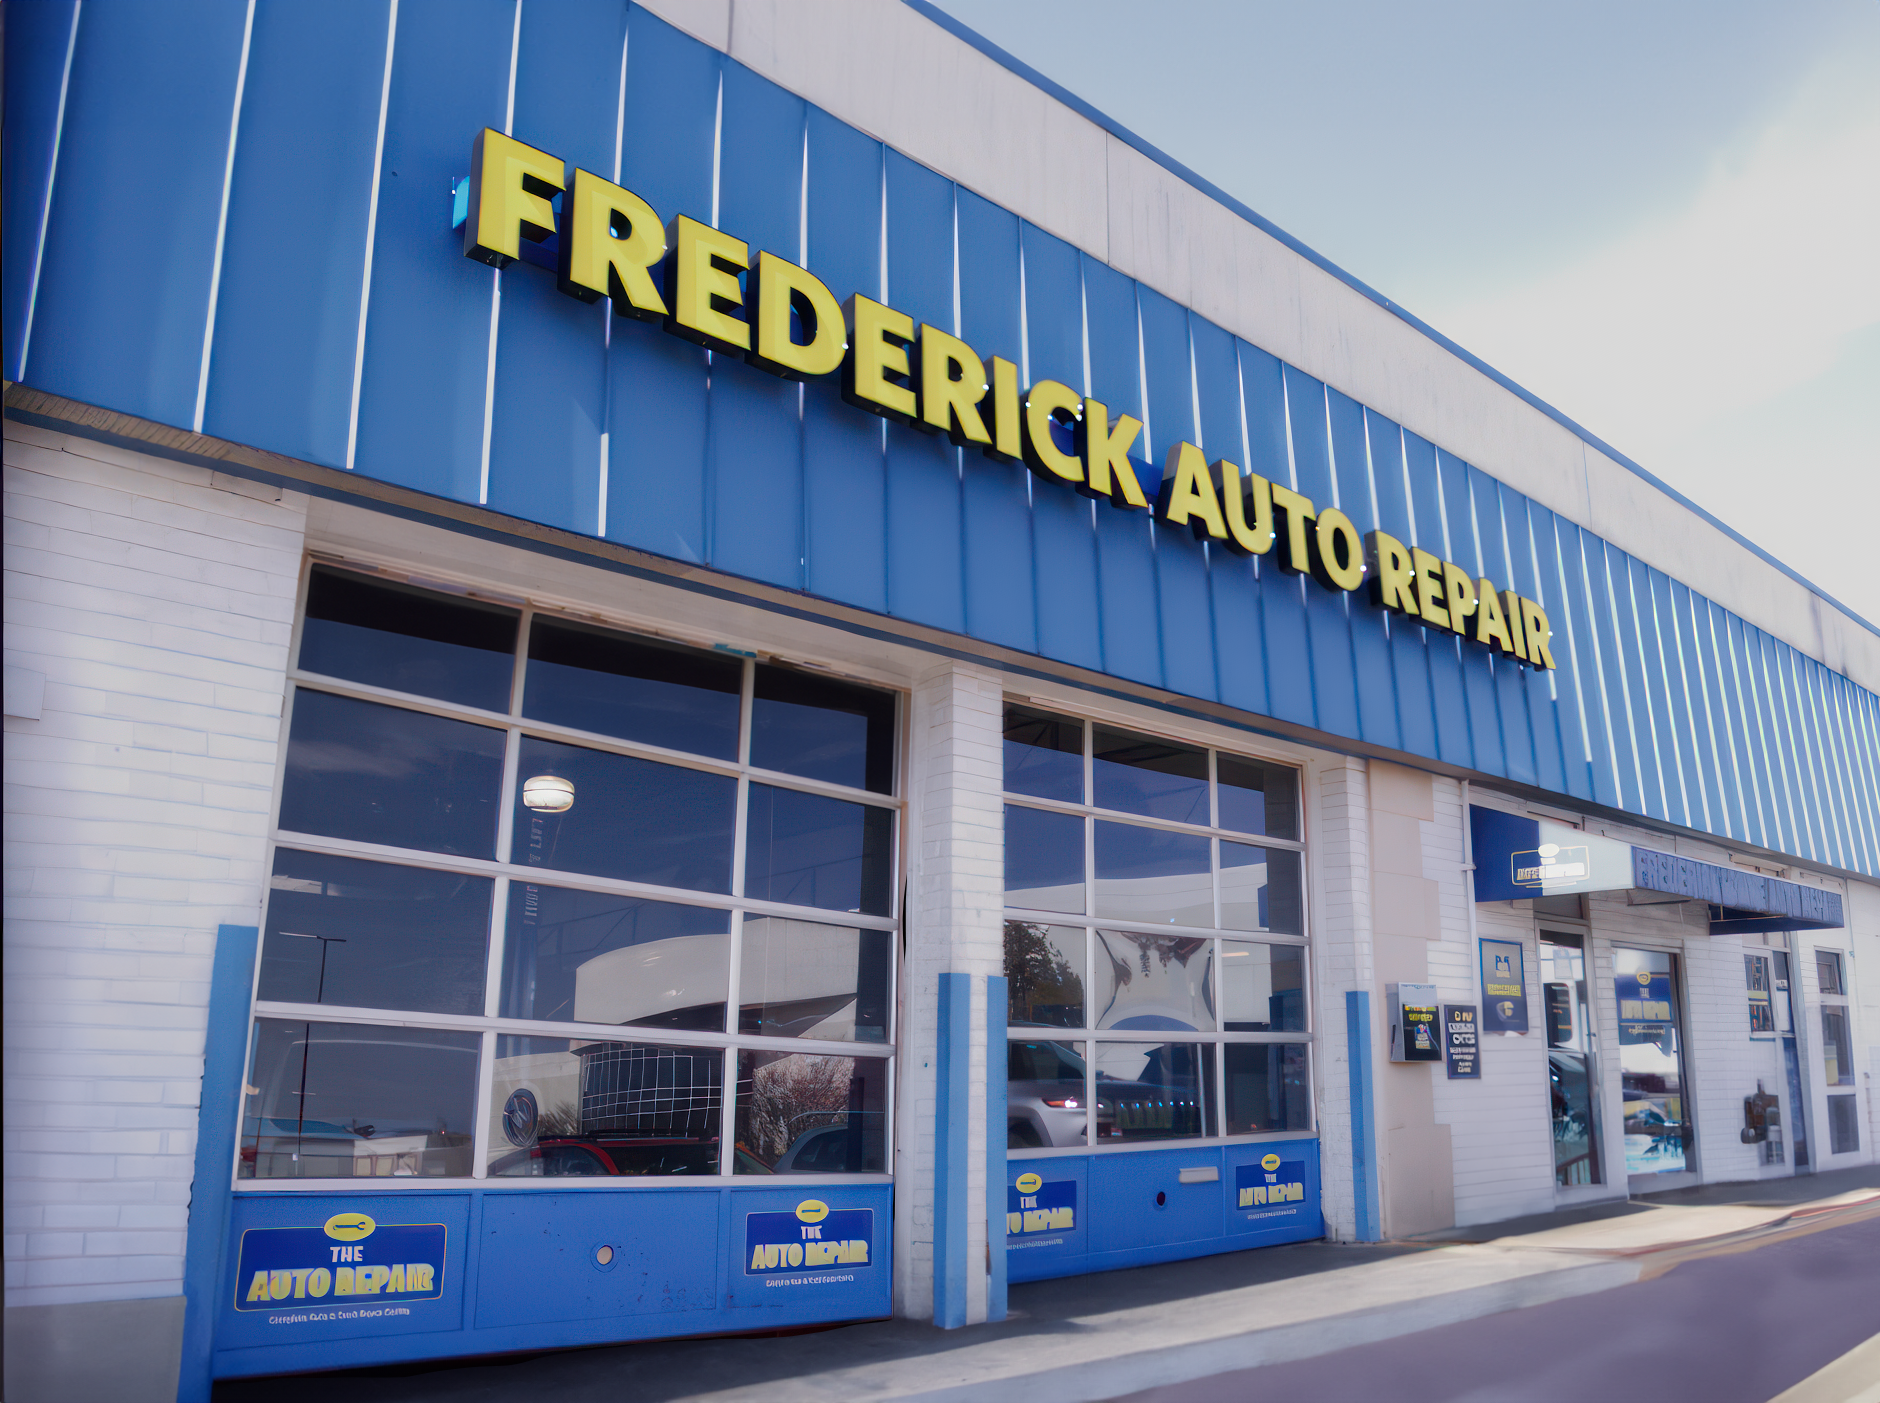 Frederick Auto Repair